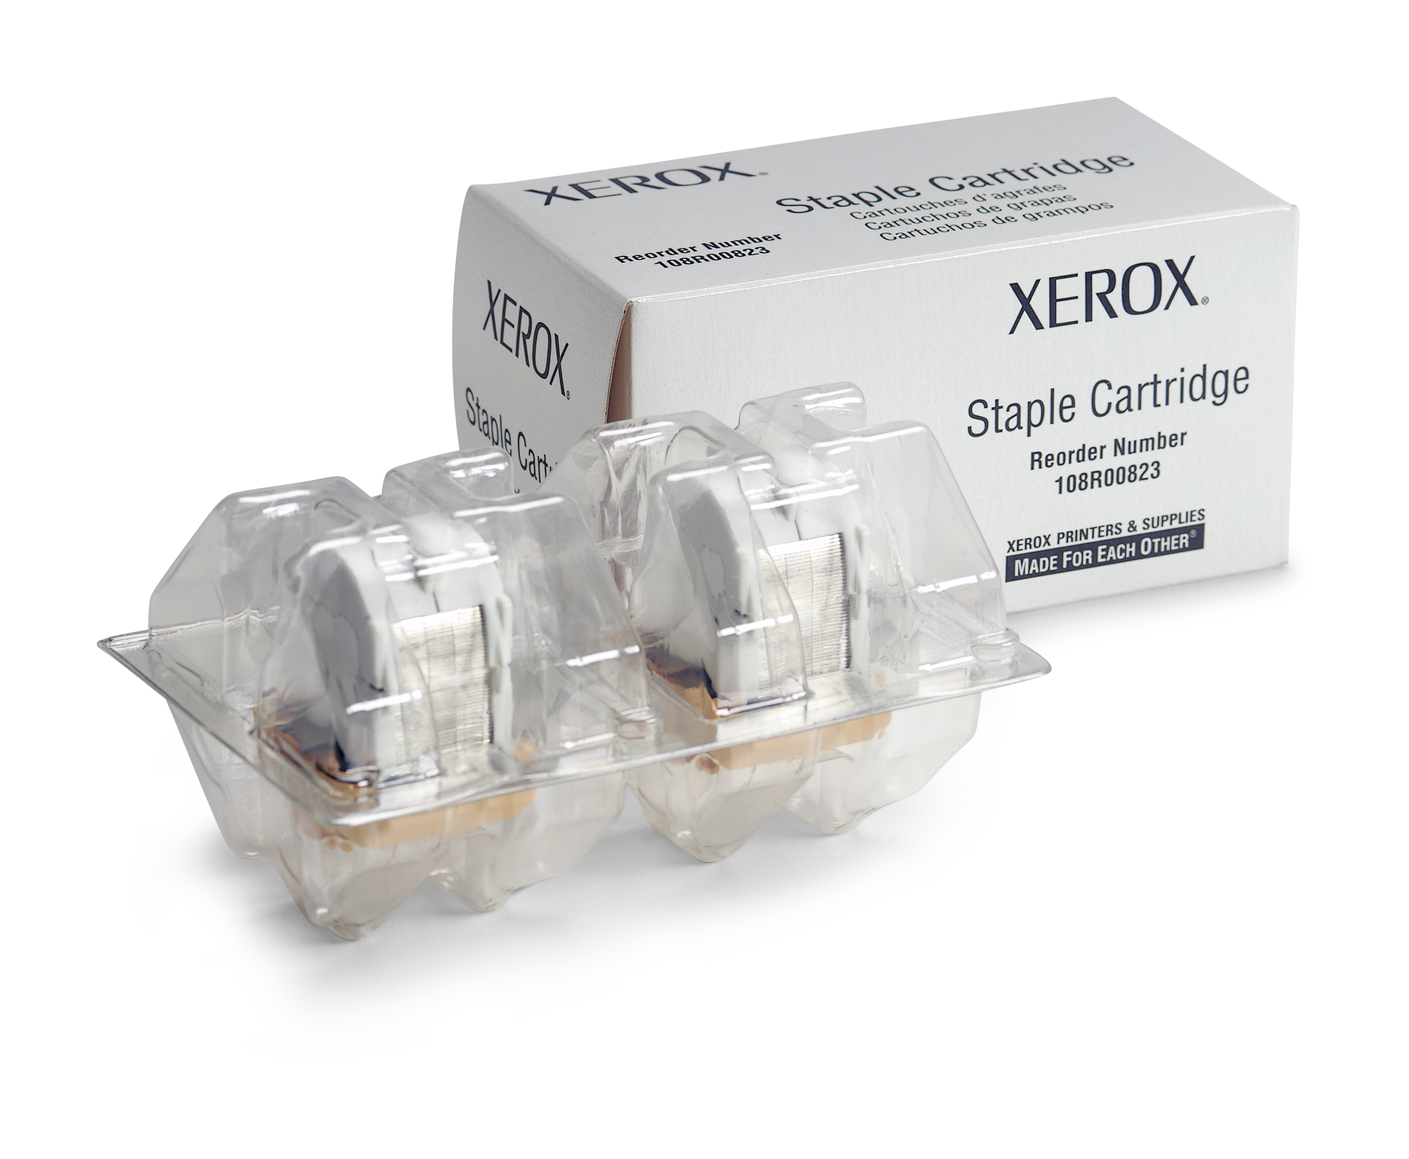 Staple Cartridge, Phaser 3635, WorkCentre 3655, WorkCentre 6655 108R00823  Genuine Xerox Supplies